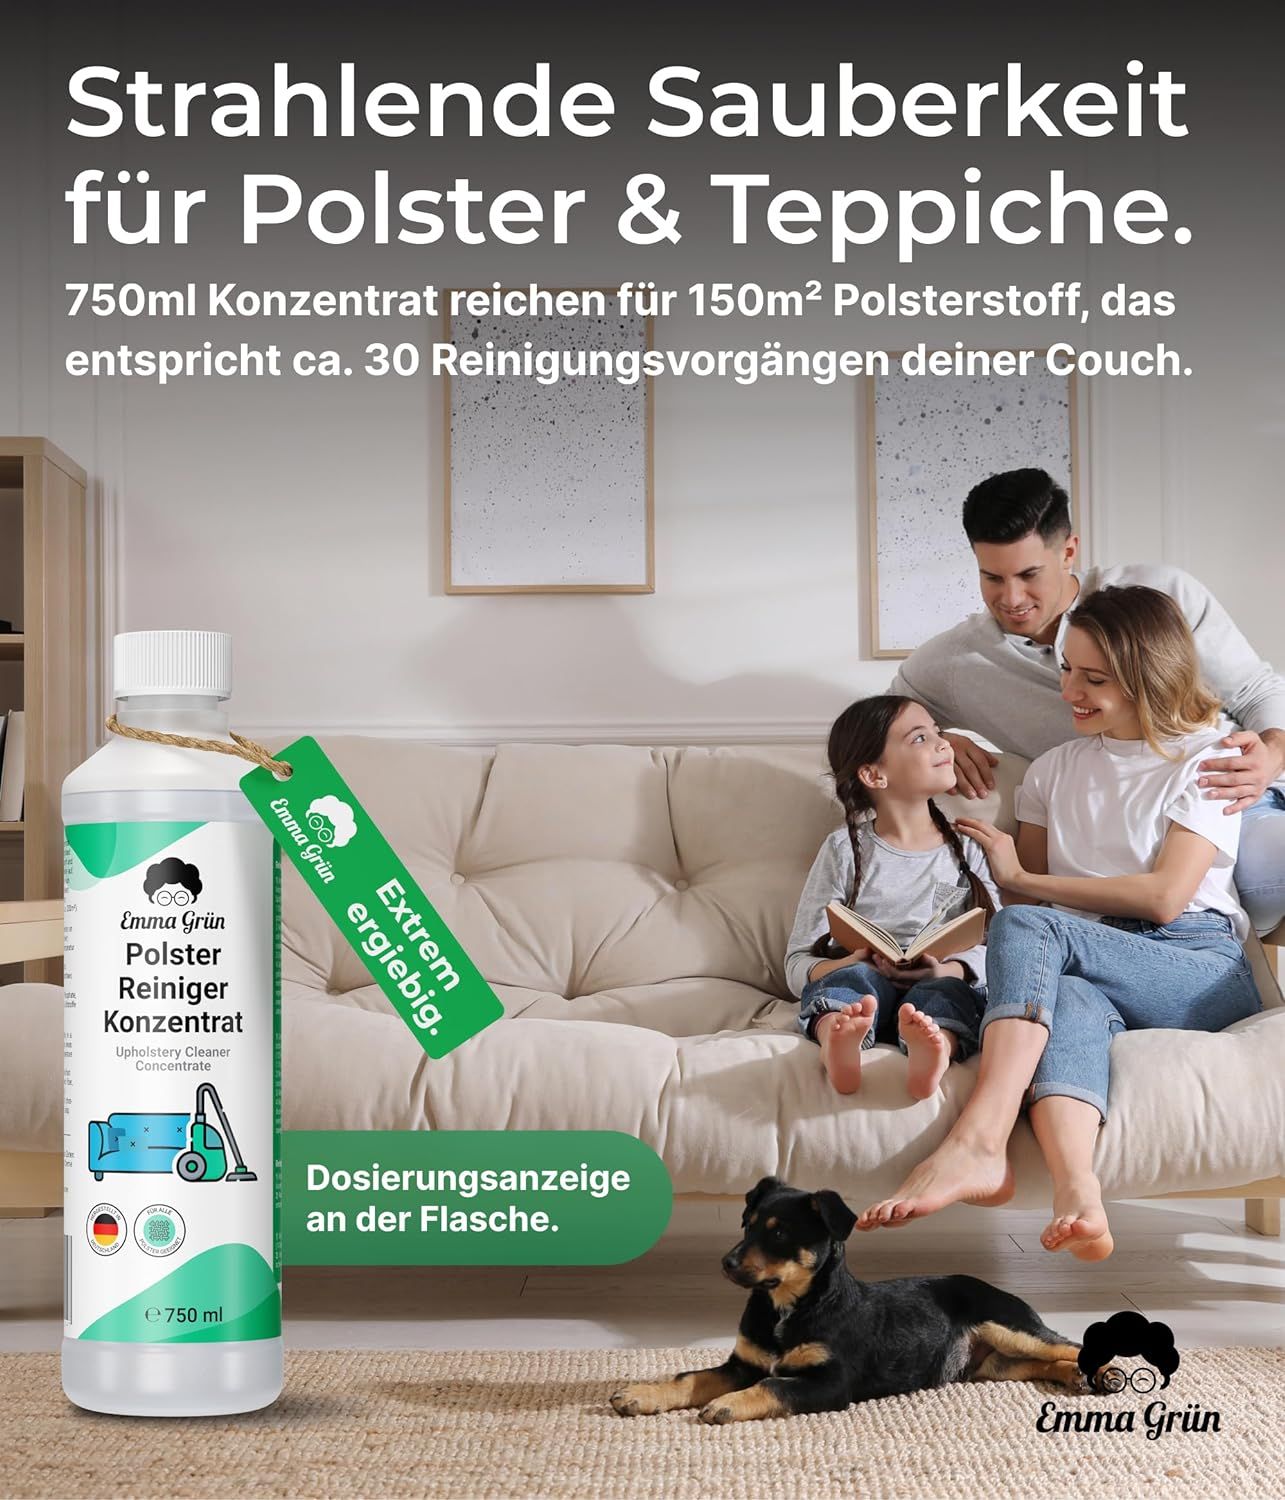 Emma Grün® Polsterreiniger Konzentrat für Waschsauger & Nasssauger